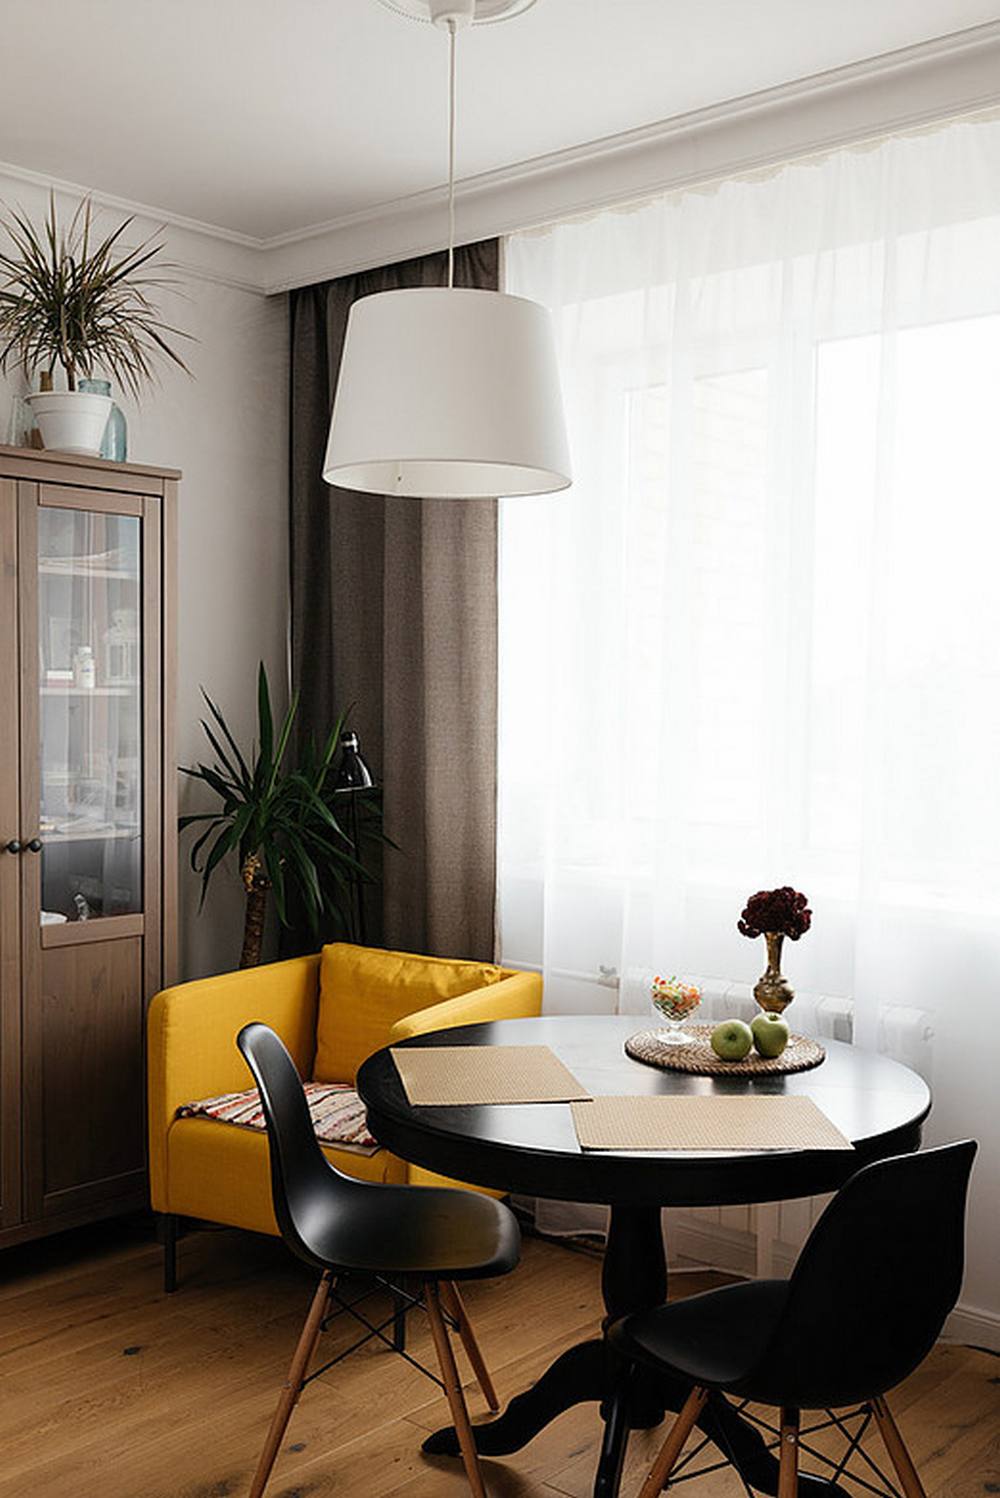 Khu vực ăn uống với bộ bàn ghế tròn màu đen vững chãi. Việc lựa chọn nội thất hình tròn là giải pháp phù hợp cho căn hộ nhỏ, giúp tiết kiệm không gian so với mẫu bàn dài vuông vức. Bên trên là đèn thả trần màu trắng tạo sự tương phản nhẹ nhàng.